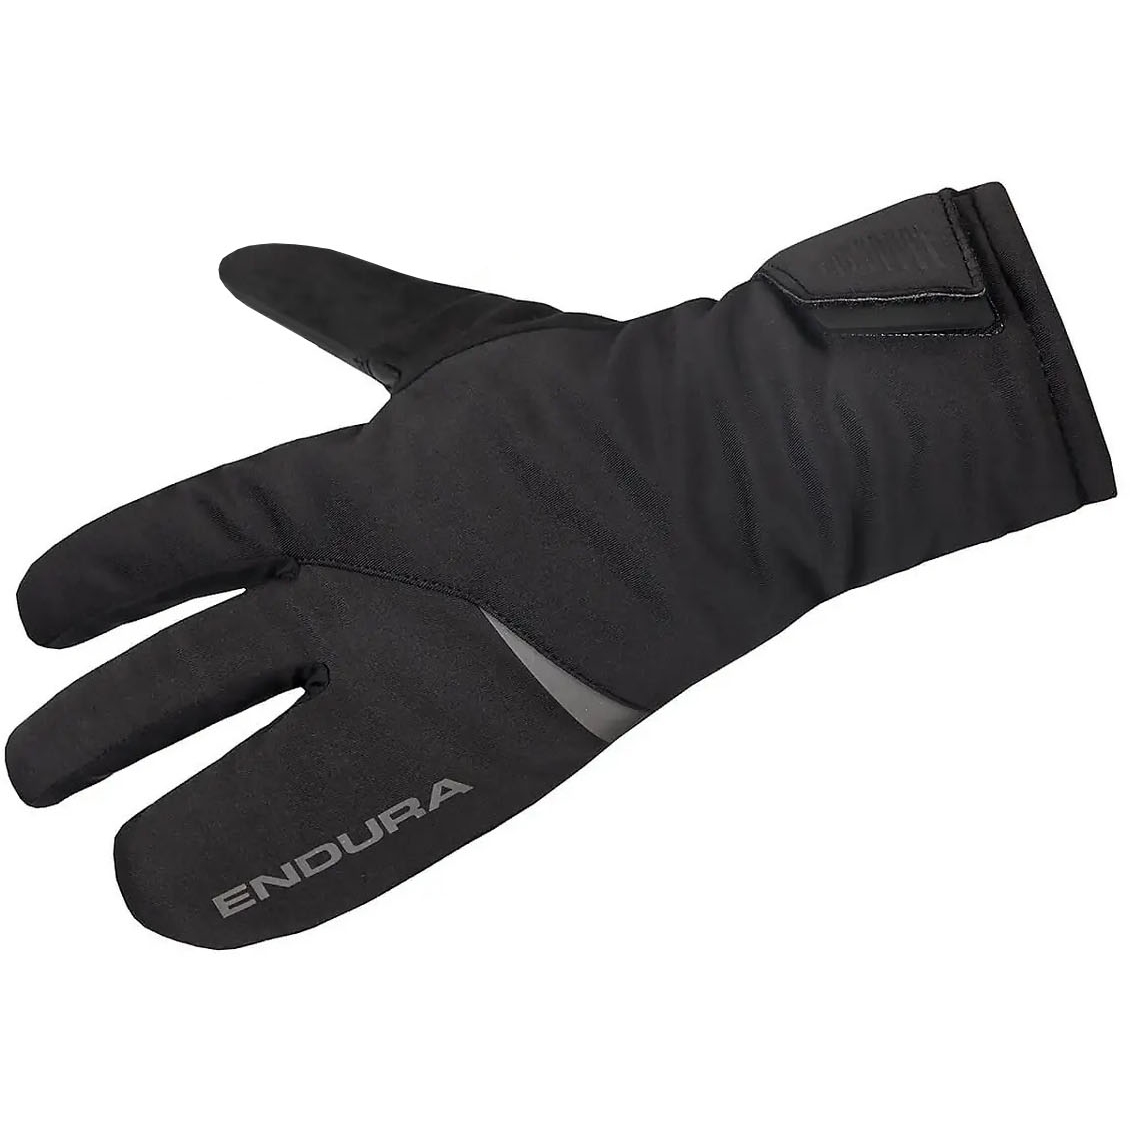 Produktbild von Endura Freezing Point Lobster Handschuhe - schwarz